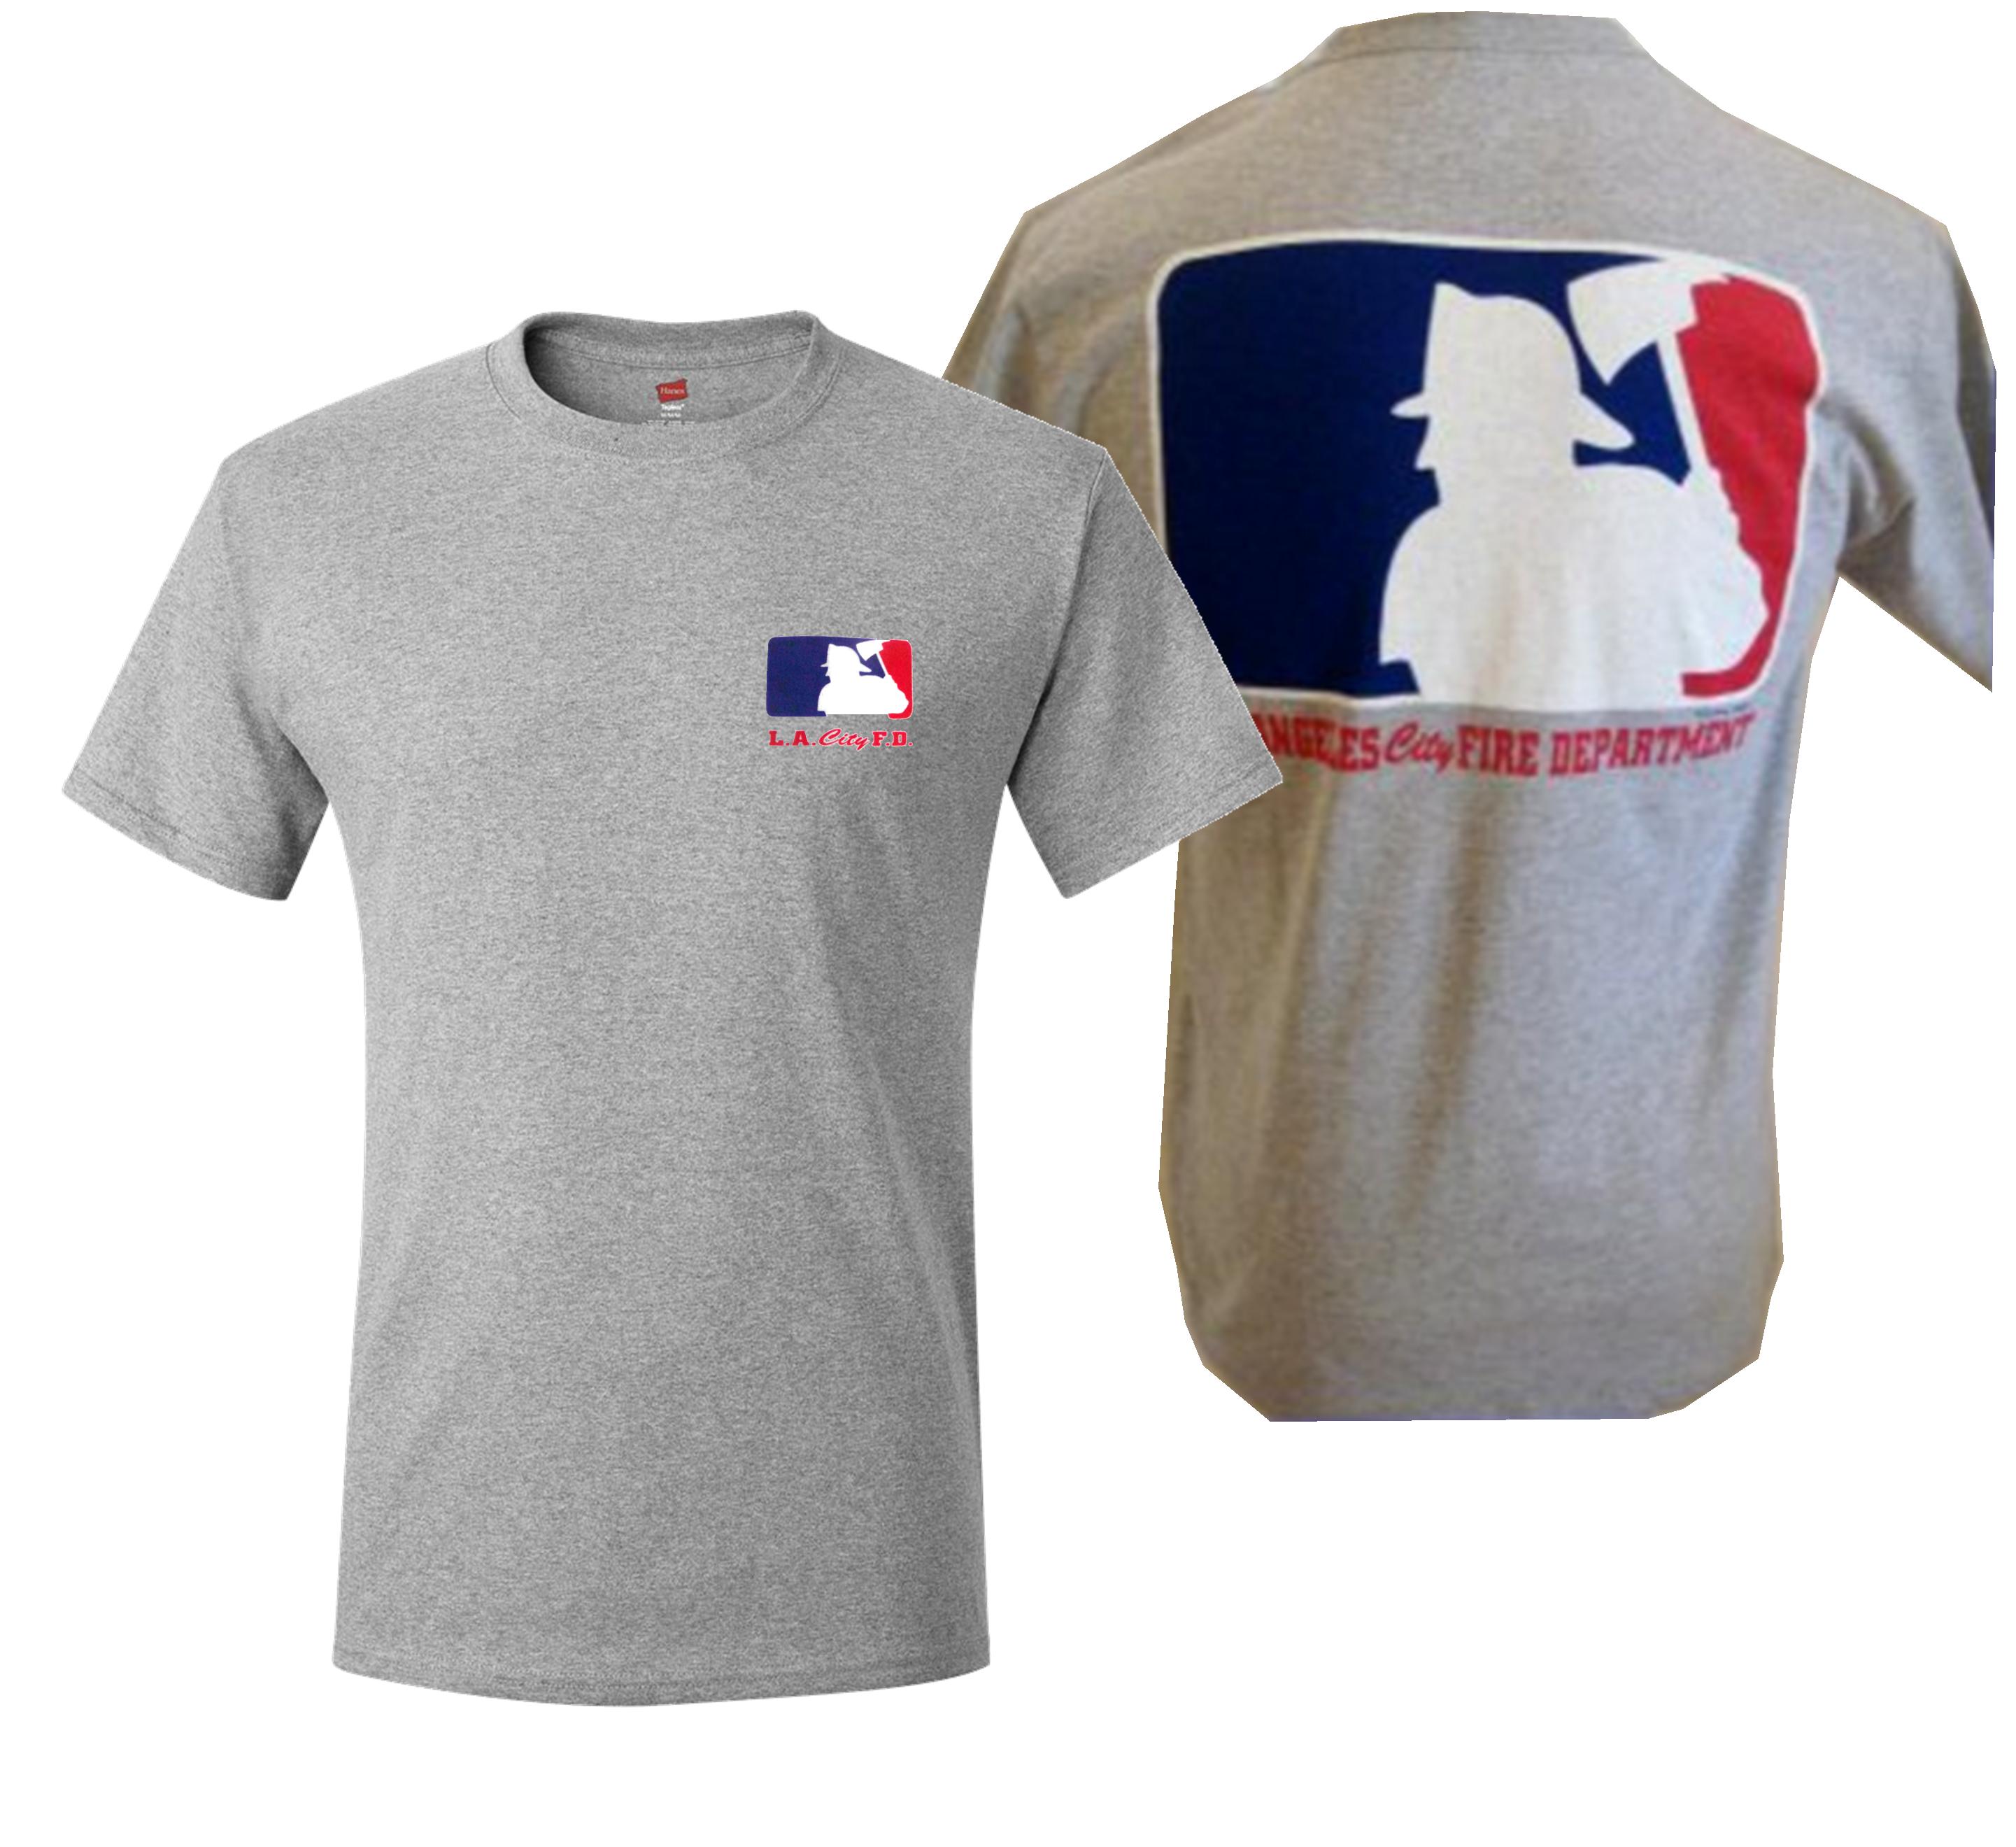 major league baseball shirt